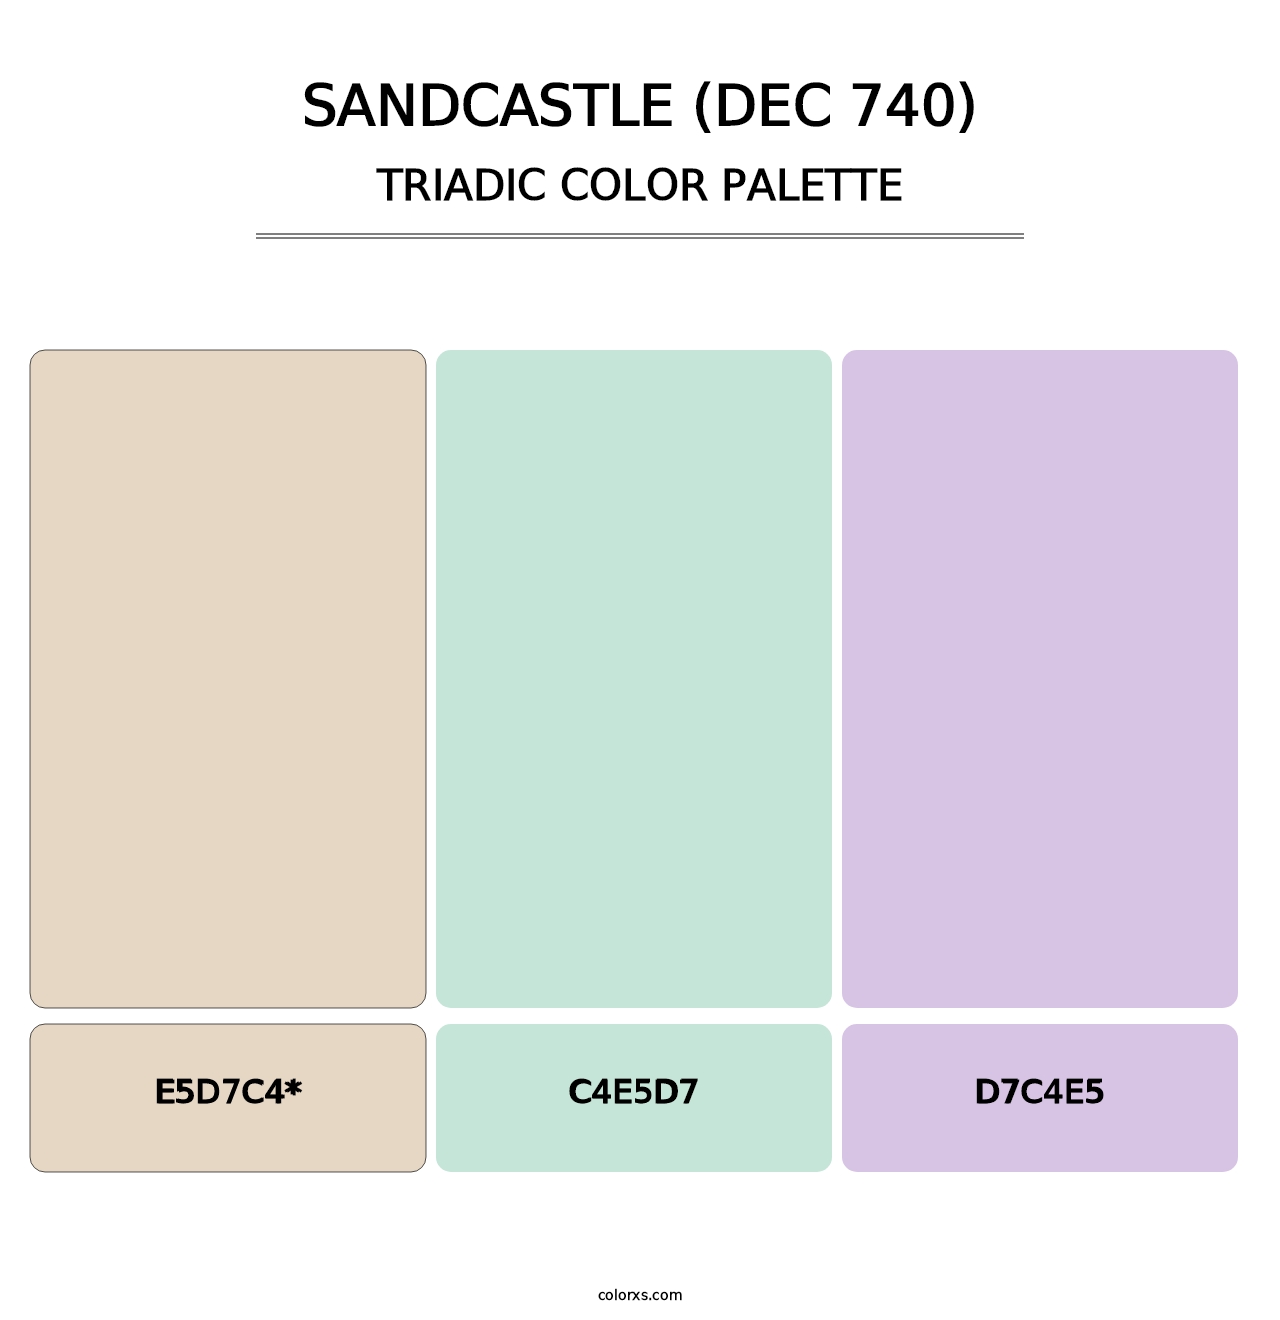 Sandcastle (DEC 740) - Triadic Color Palette